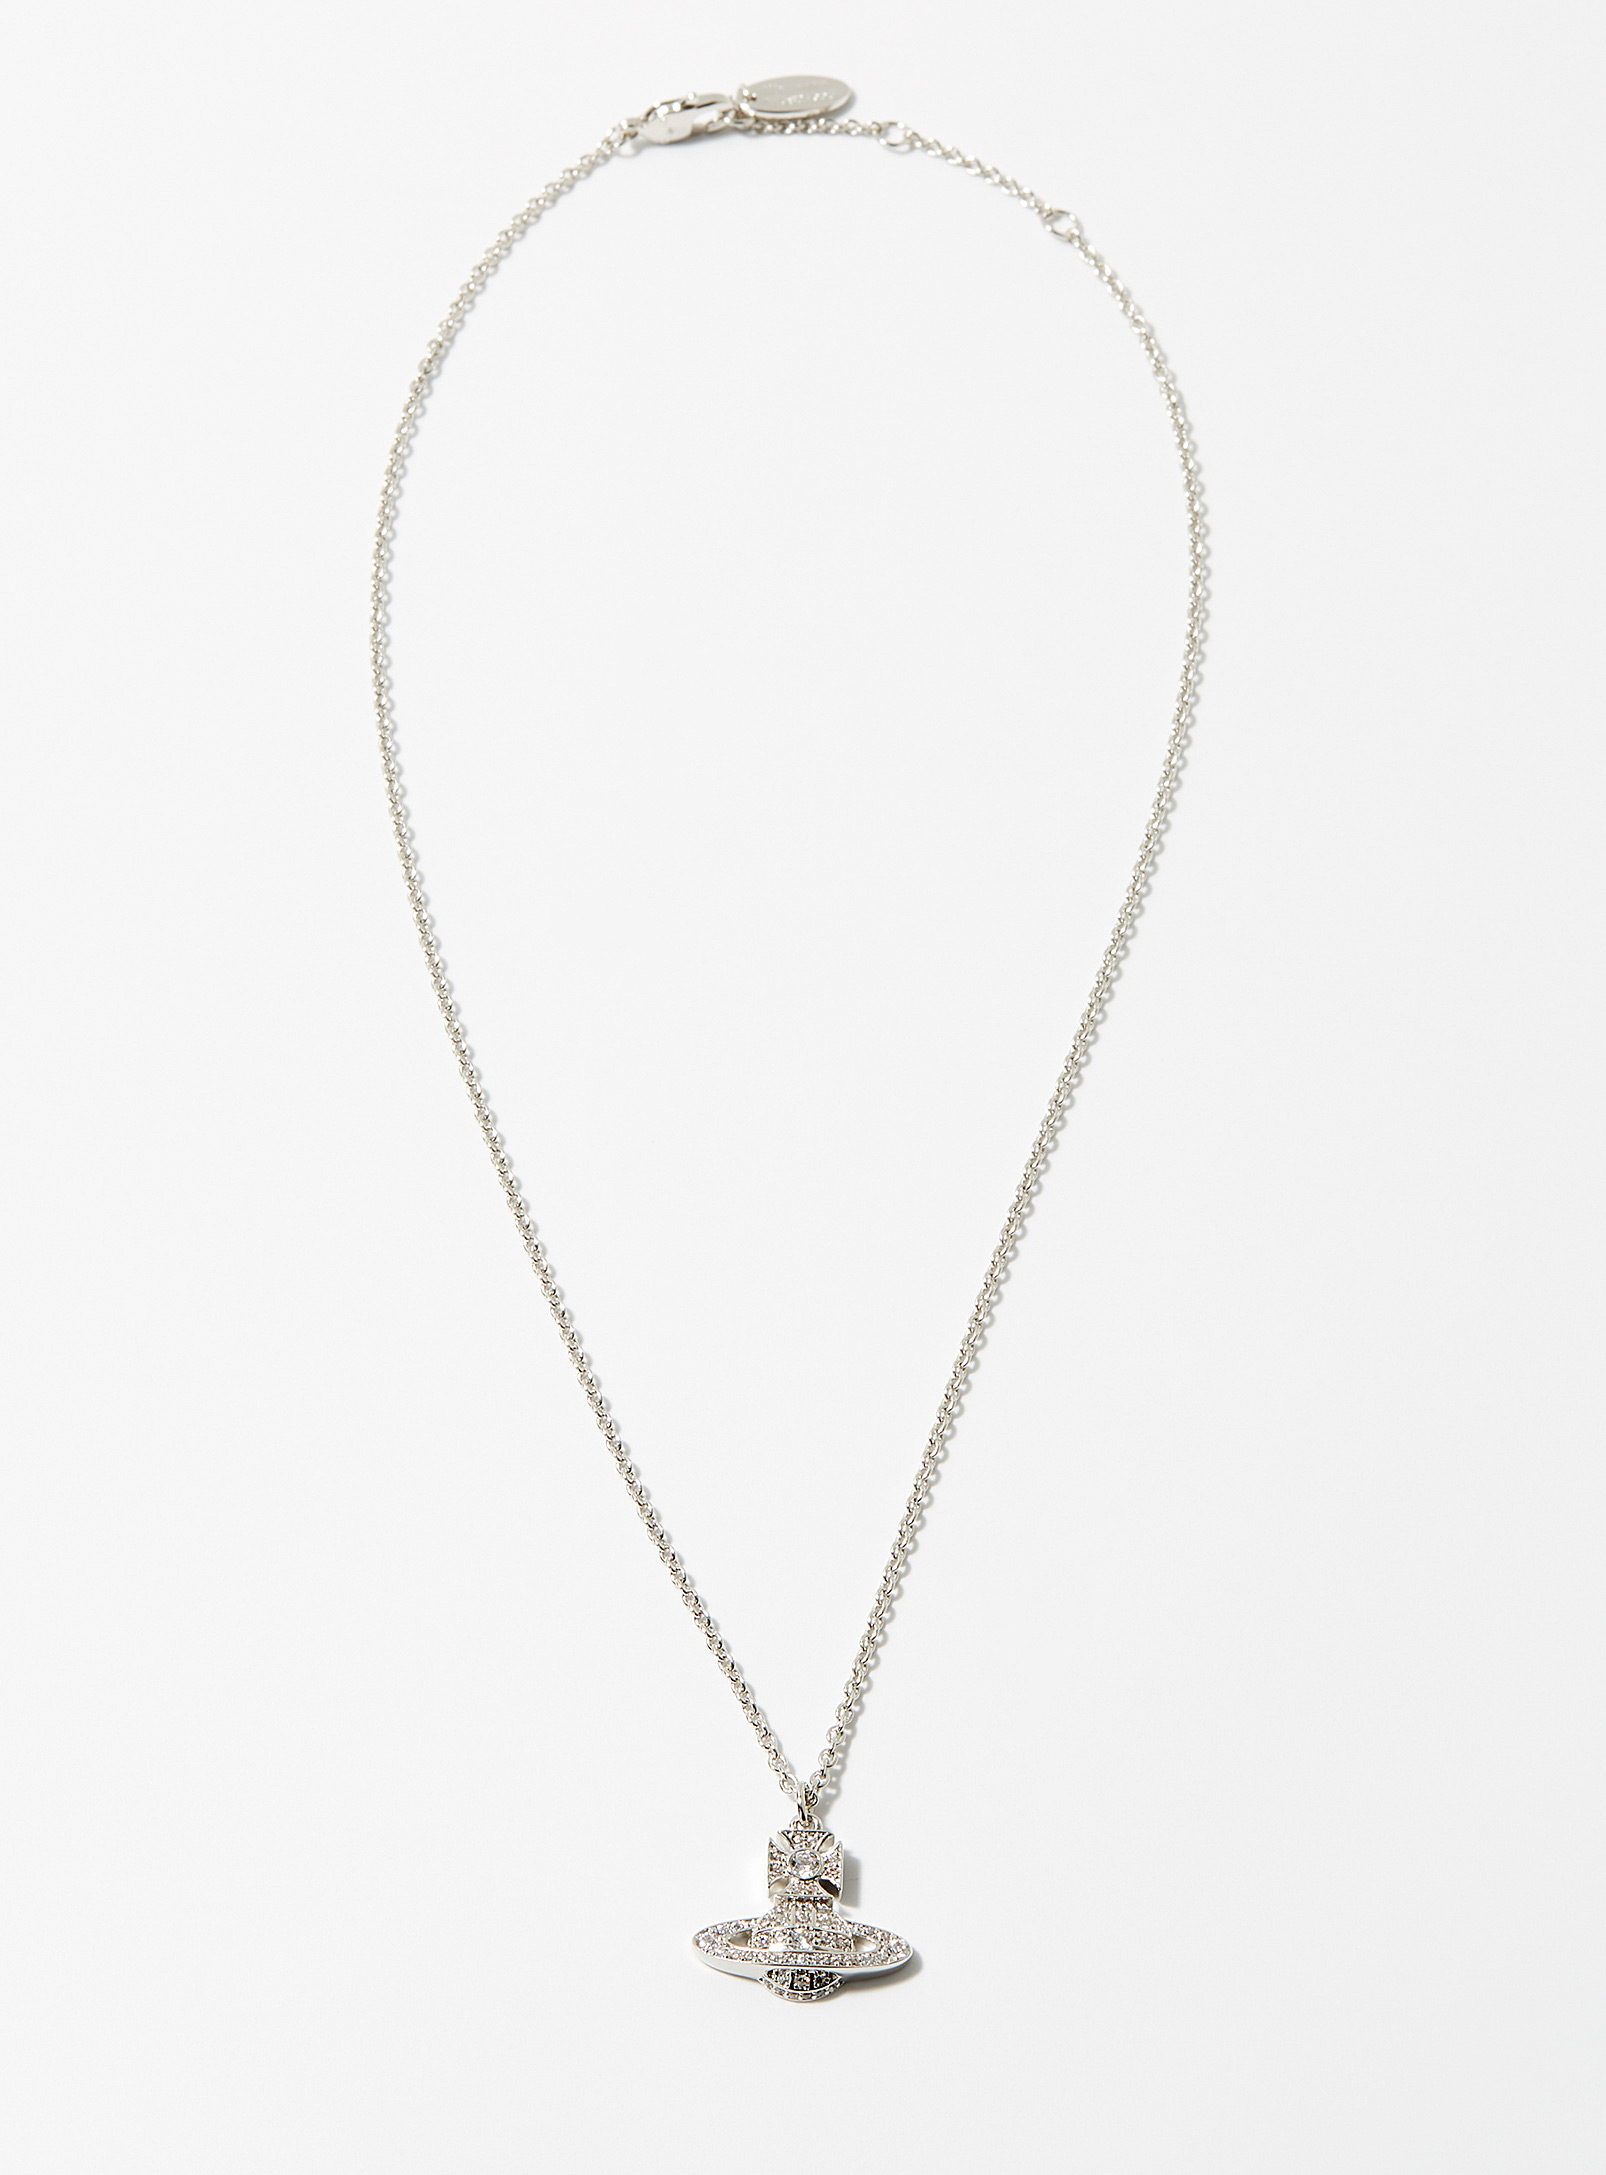 Vivienne Westwood - Men's Carmela bas relief pendant necklace